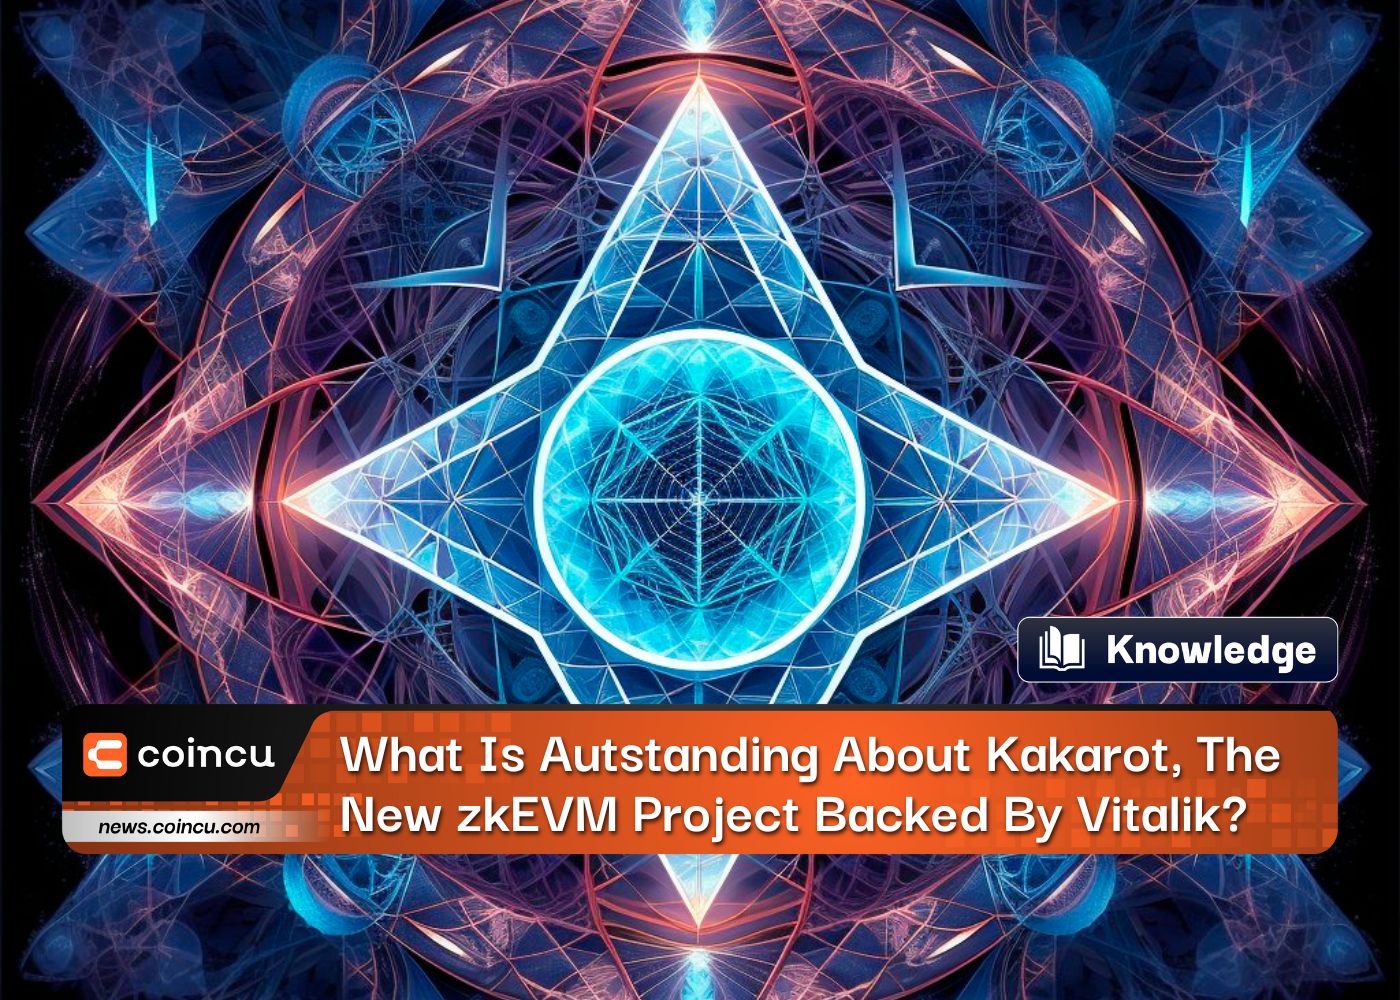 Vitalikが支援する新しいzkEVMプロジェクト、KakarotのAutstandingとは何ですか?